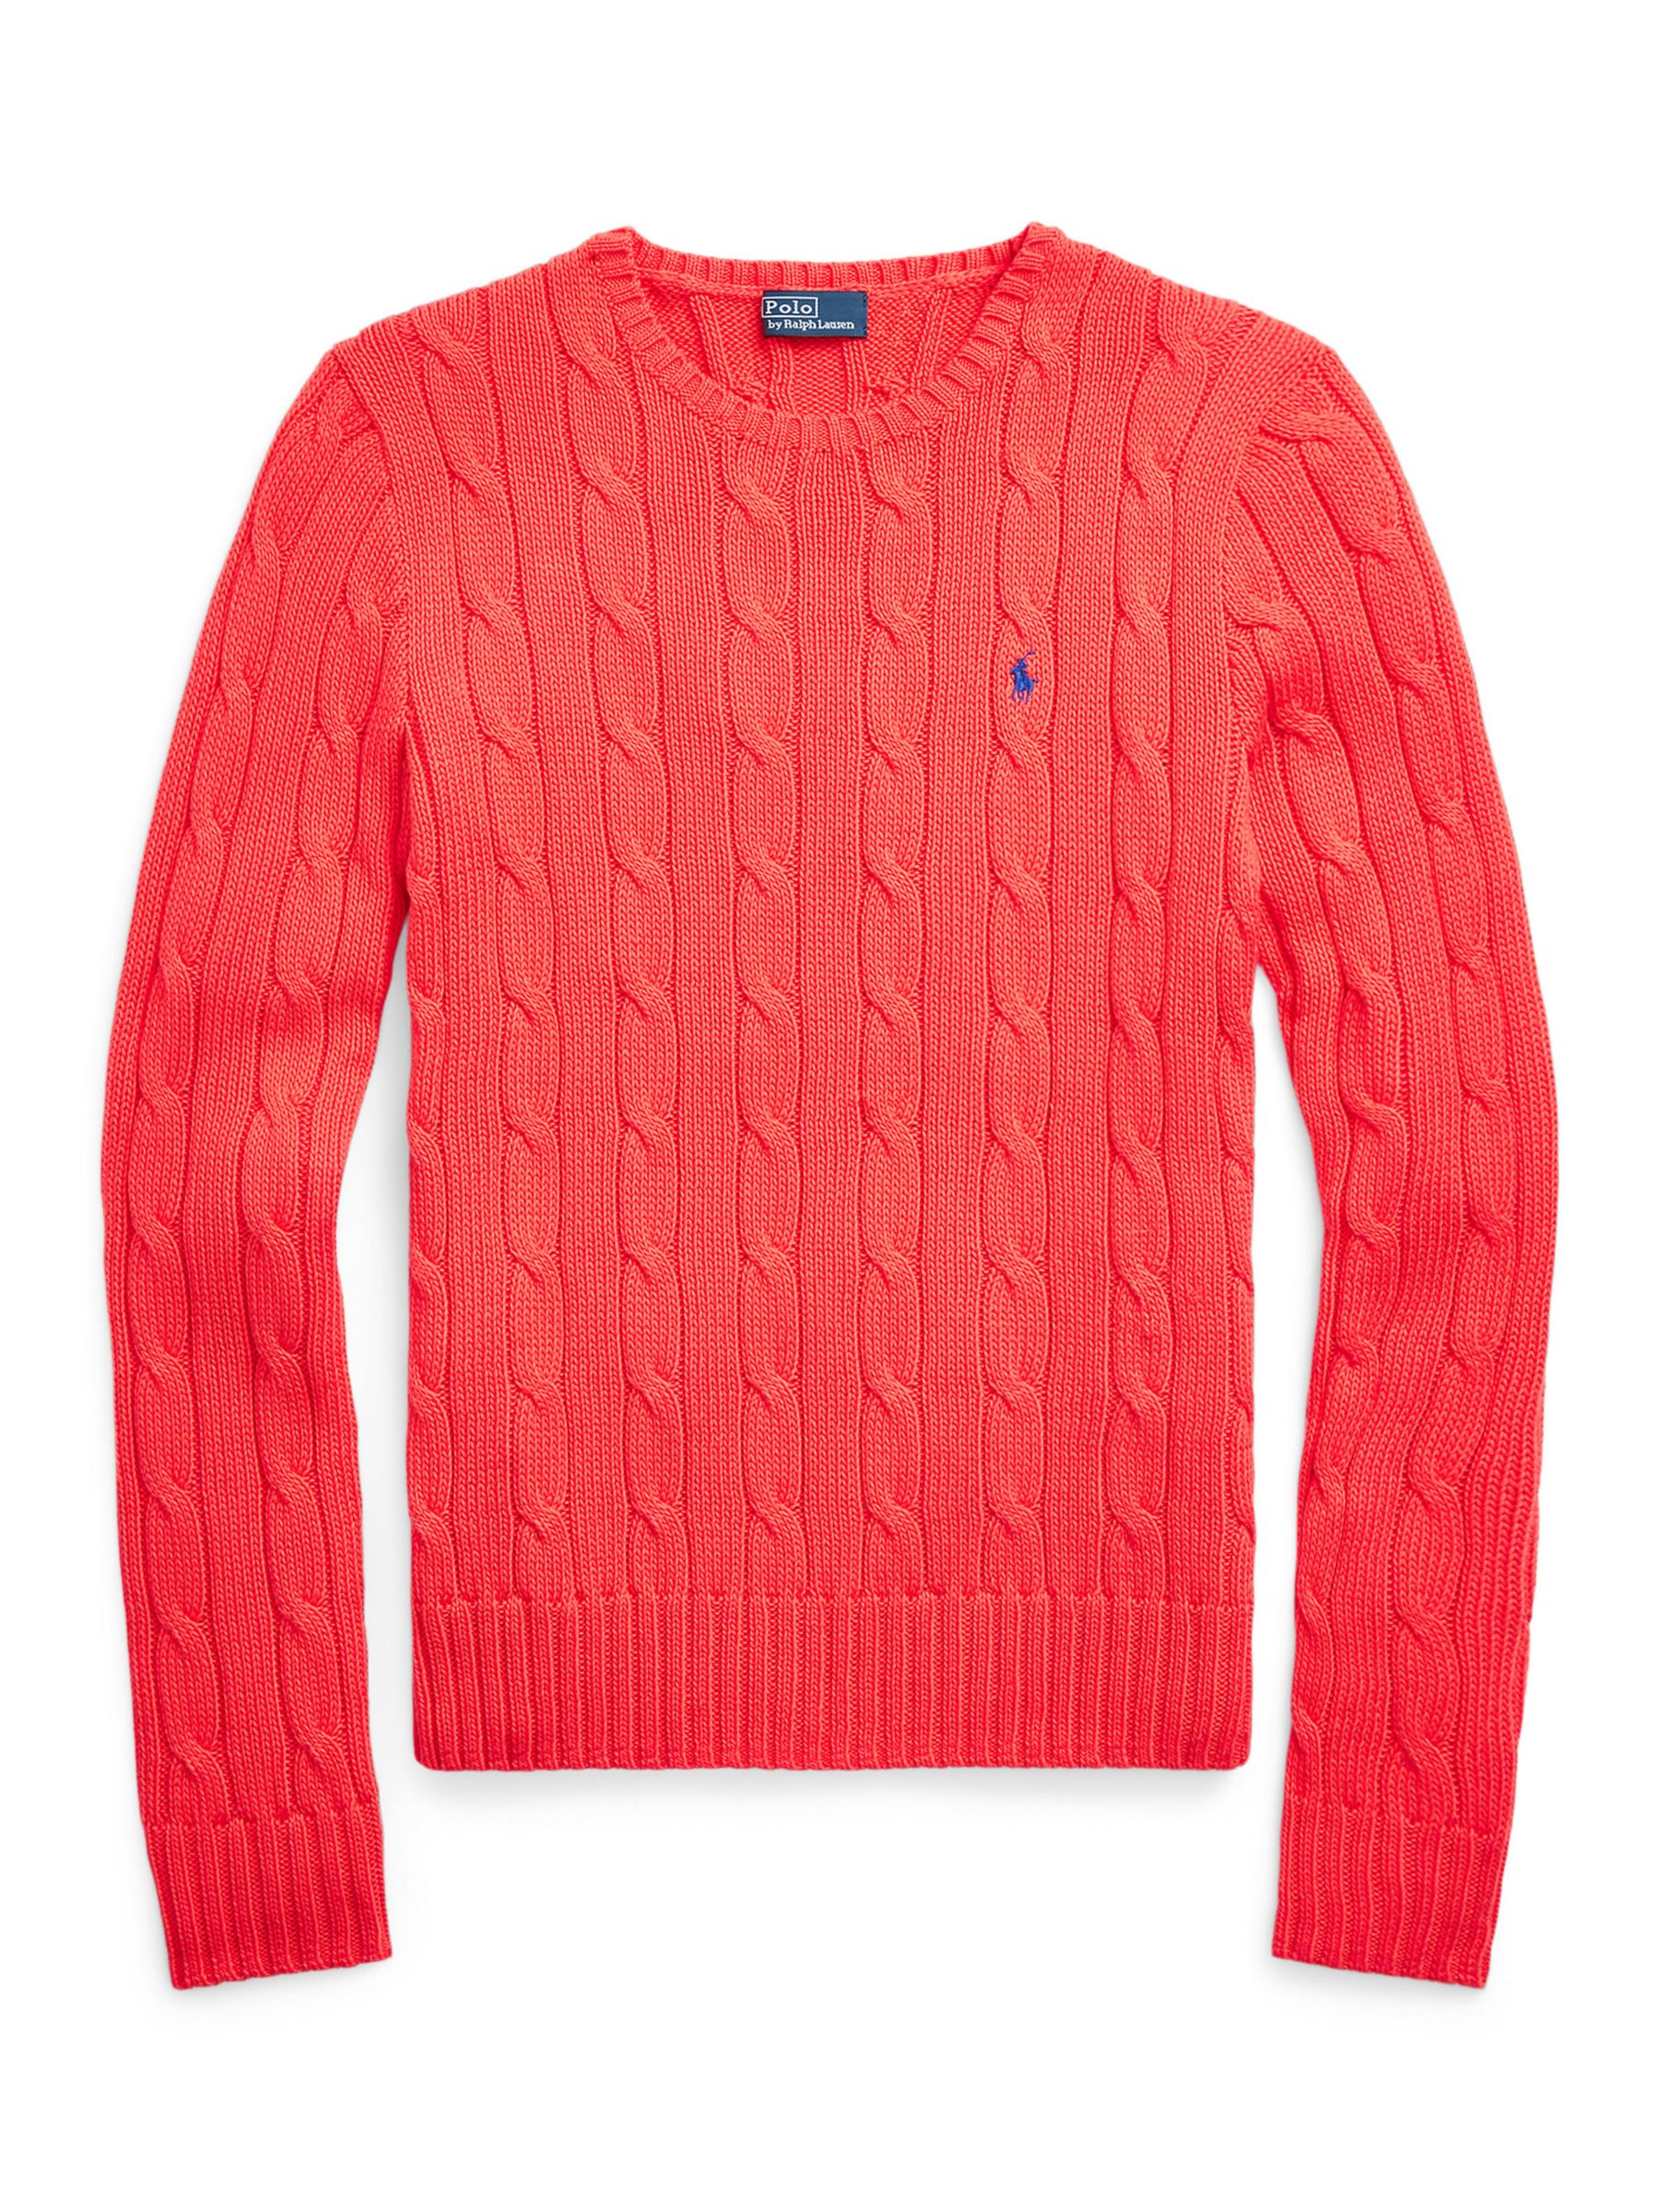 Polo Ralph Lauren, Julianna Crewneck Sweater